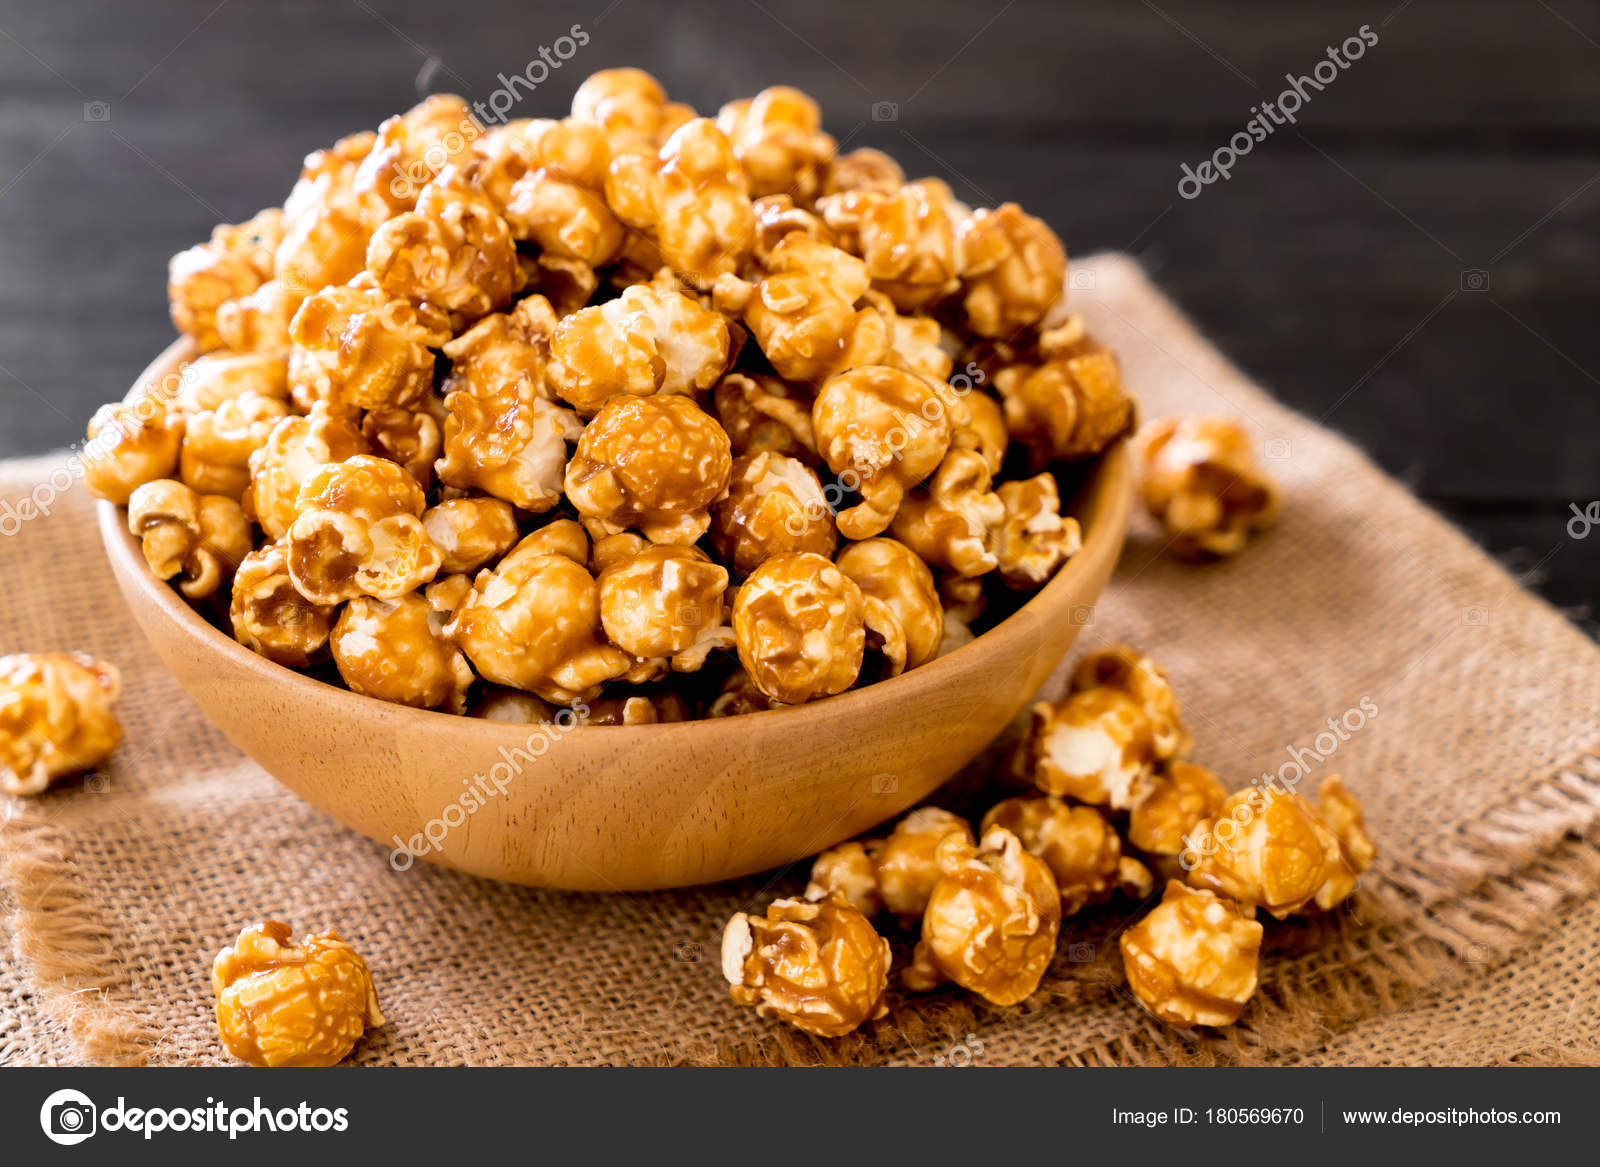 Popcorn Al Caramello In Contenitore Di Carta - Immagini vettoriali